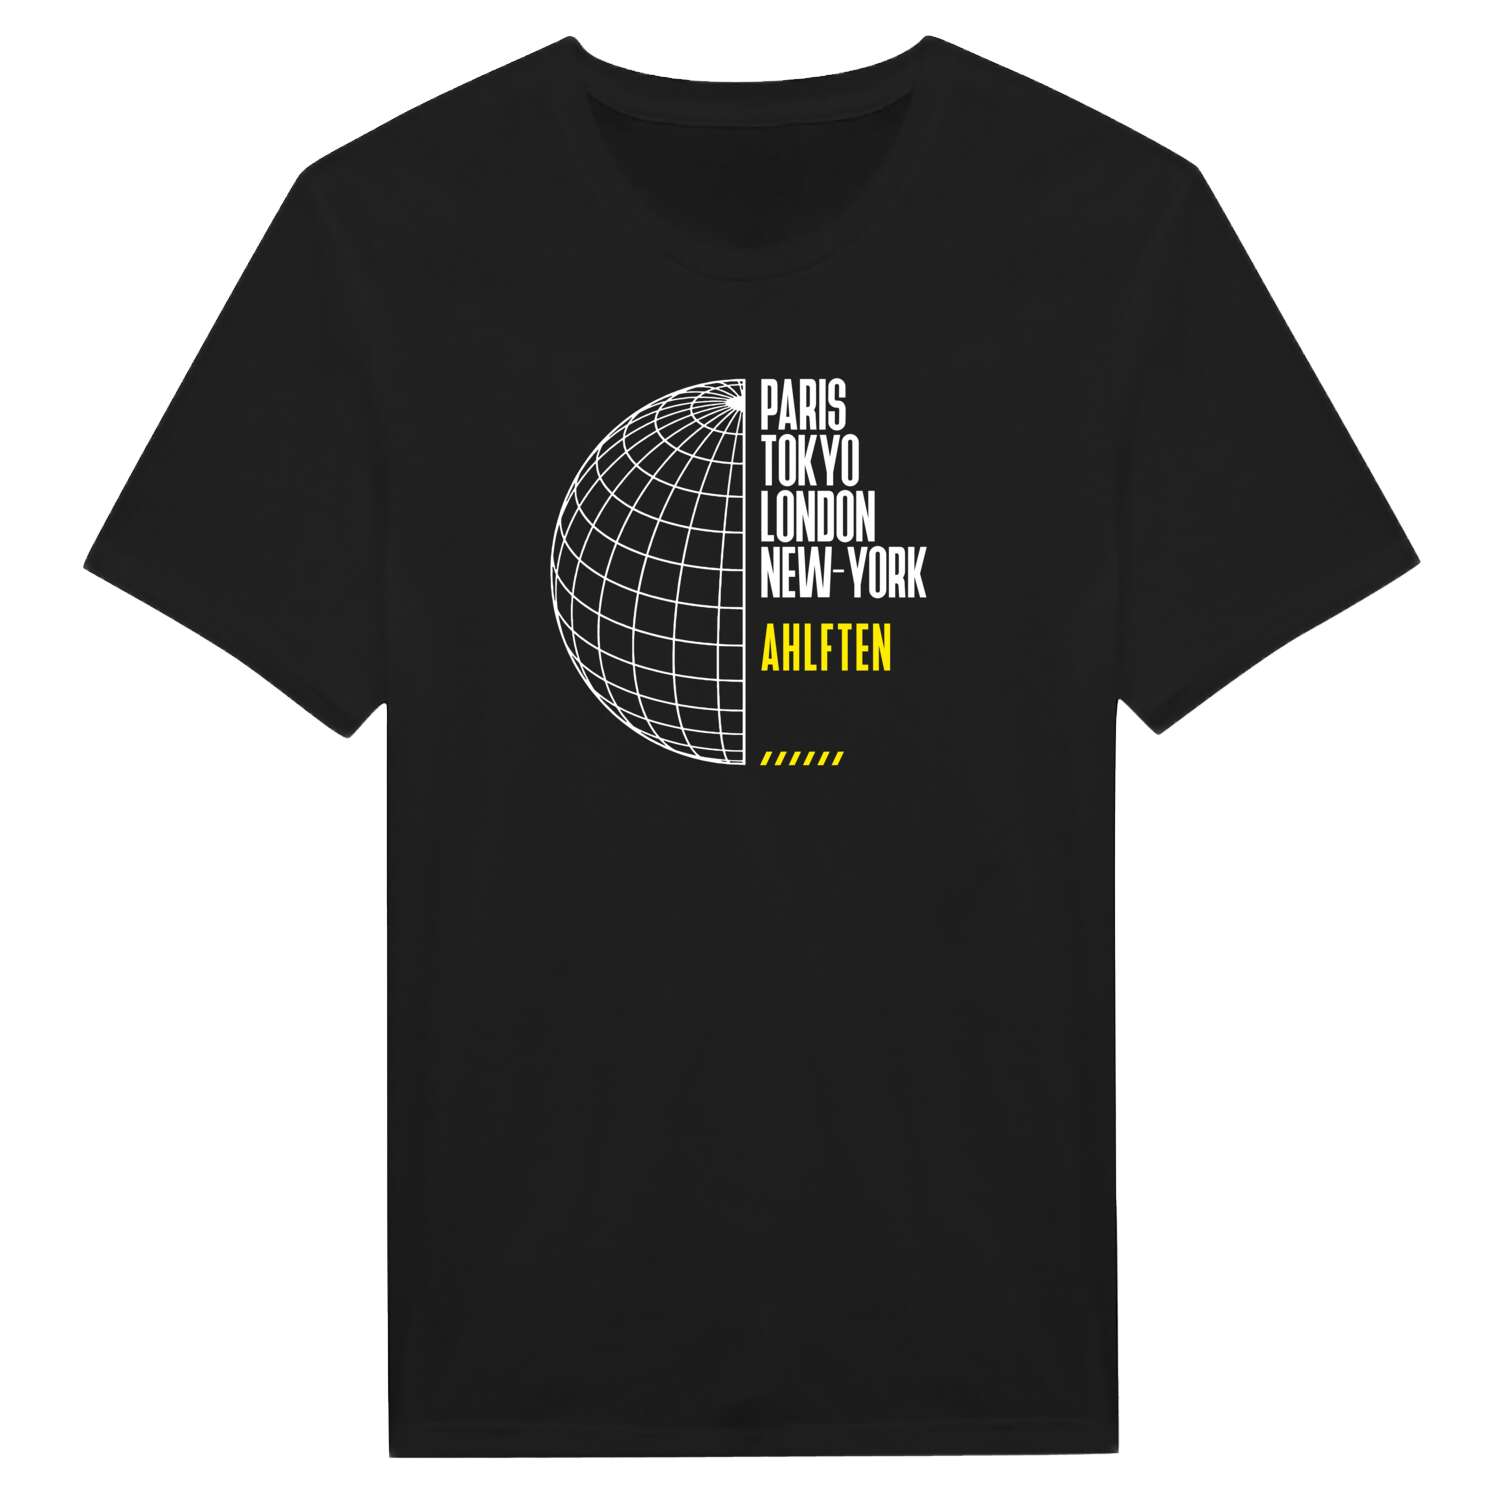 Ahlften T-Shirt »Paris Tokyo London«